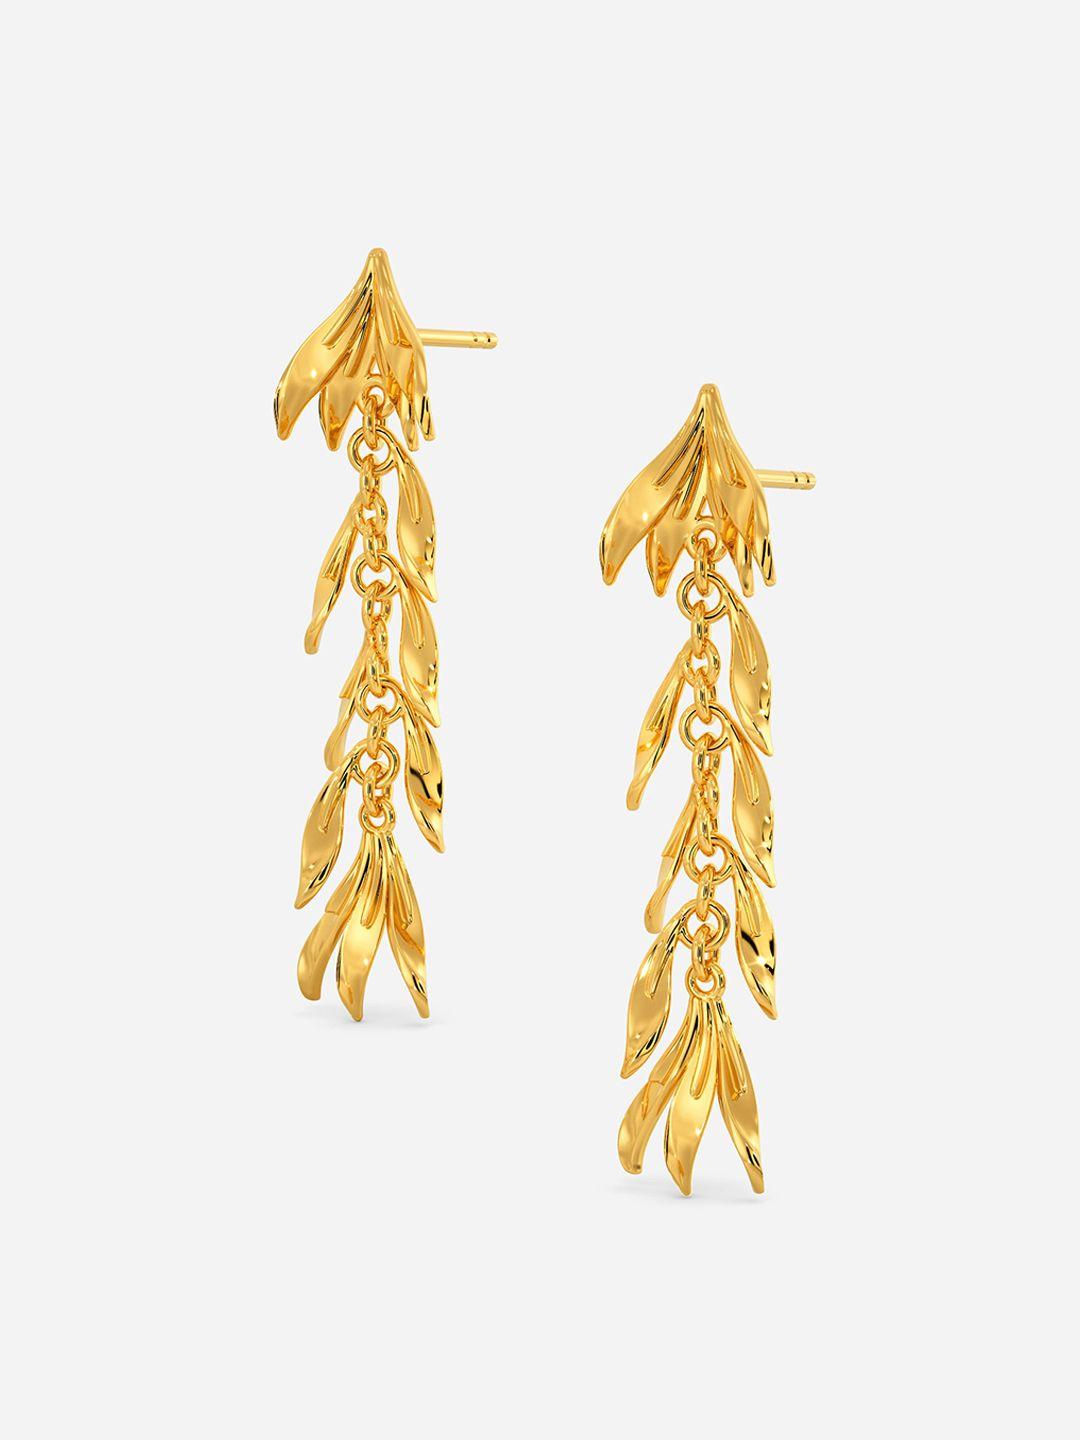 melorra twist leaf 18kt gold earrings - 4.21 gm